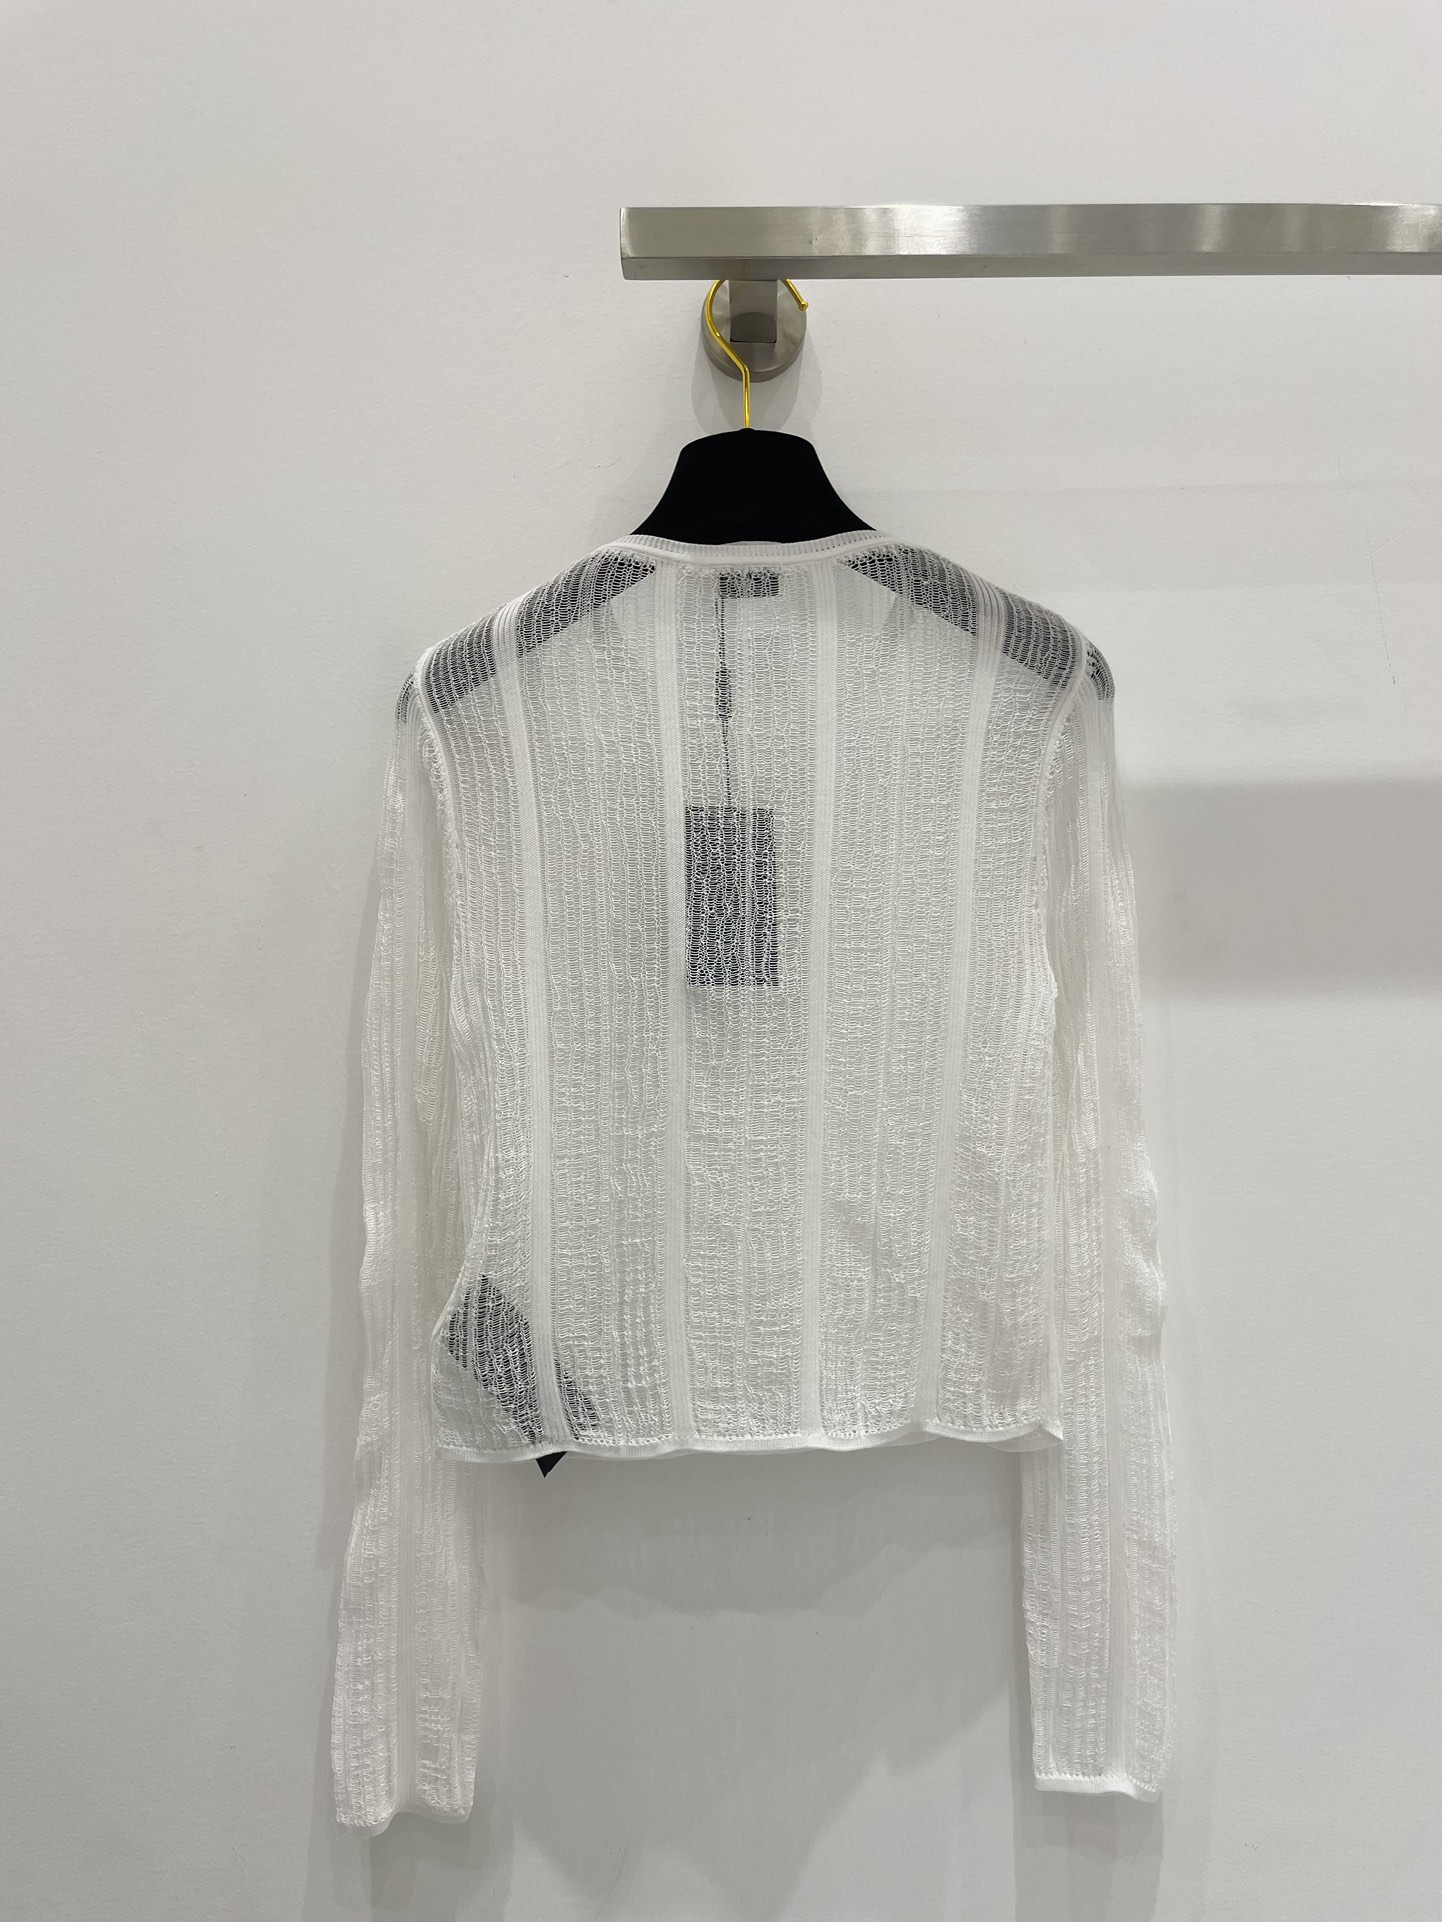 SaintLauren新品24春夏透明罩衫绝美极简设计颜色黑白尺码36.38.40